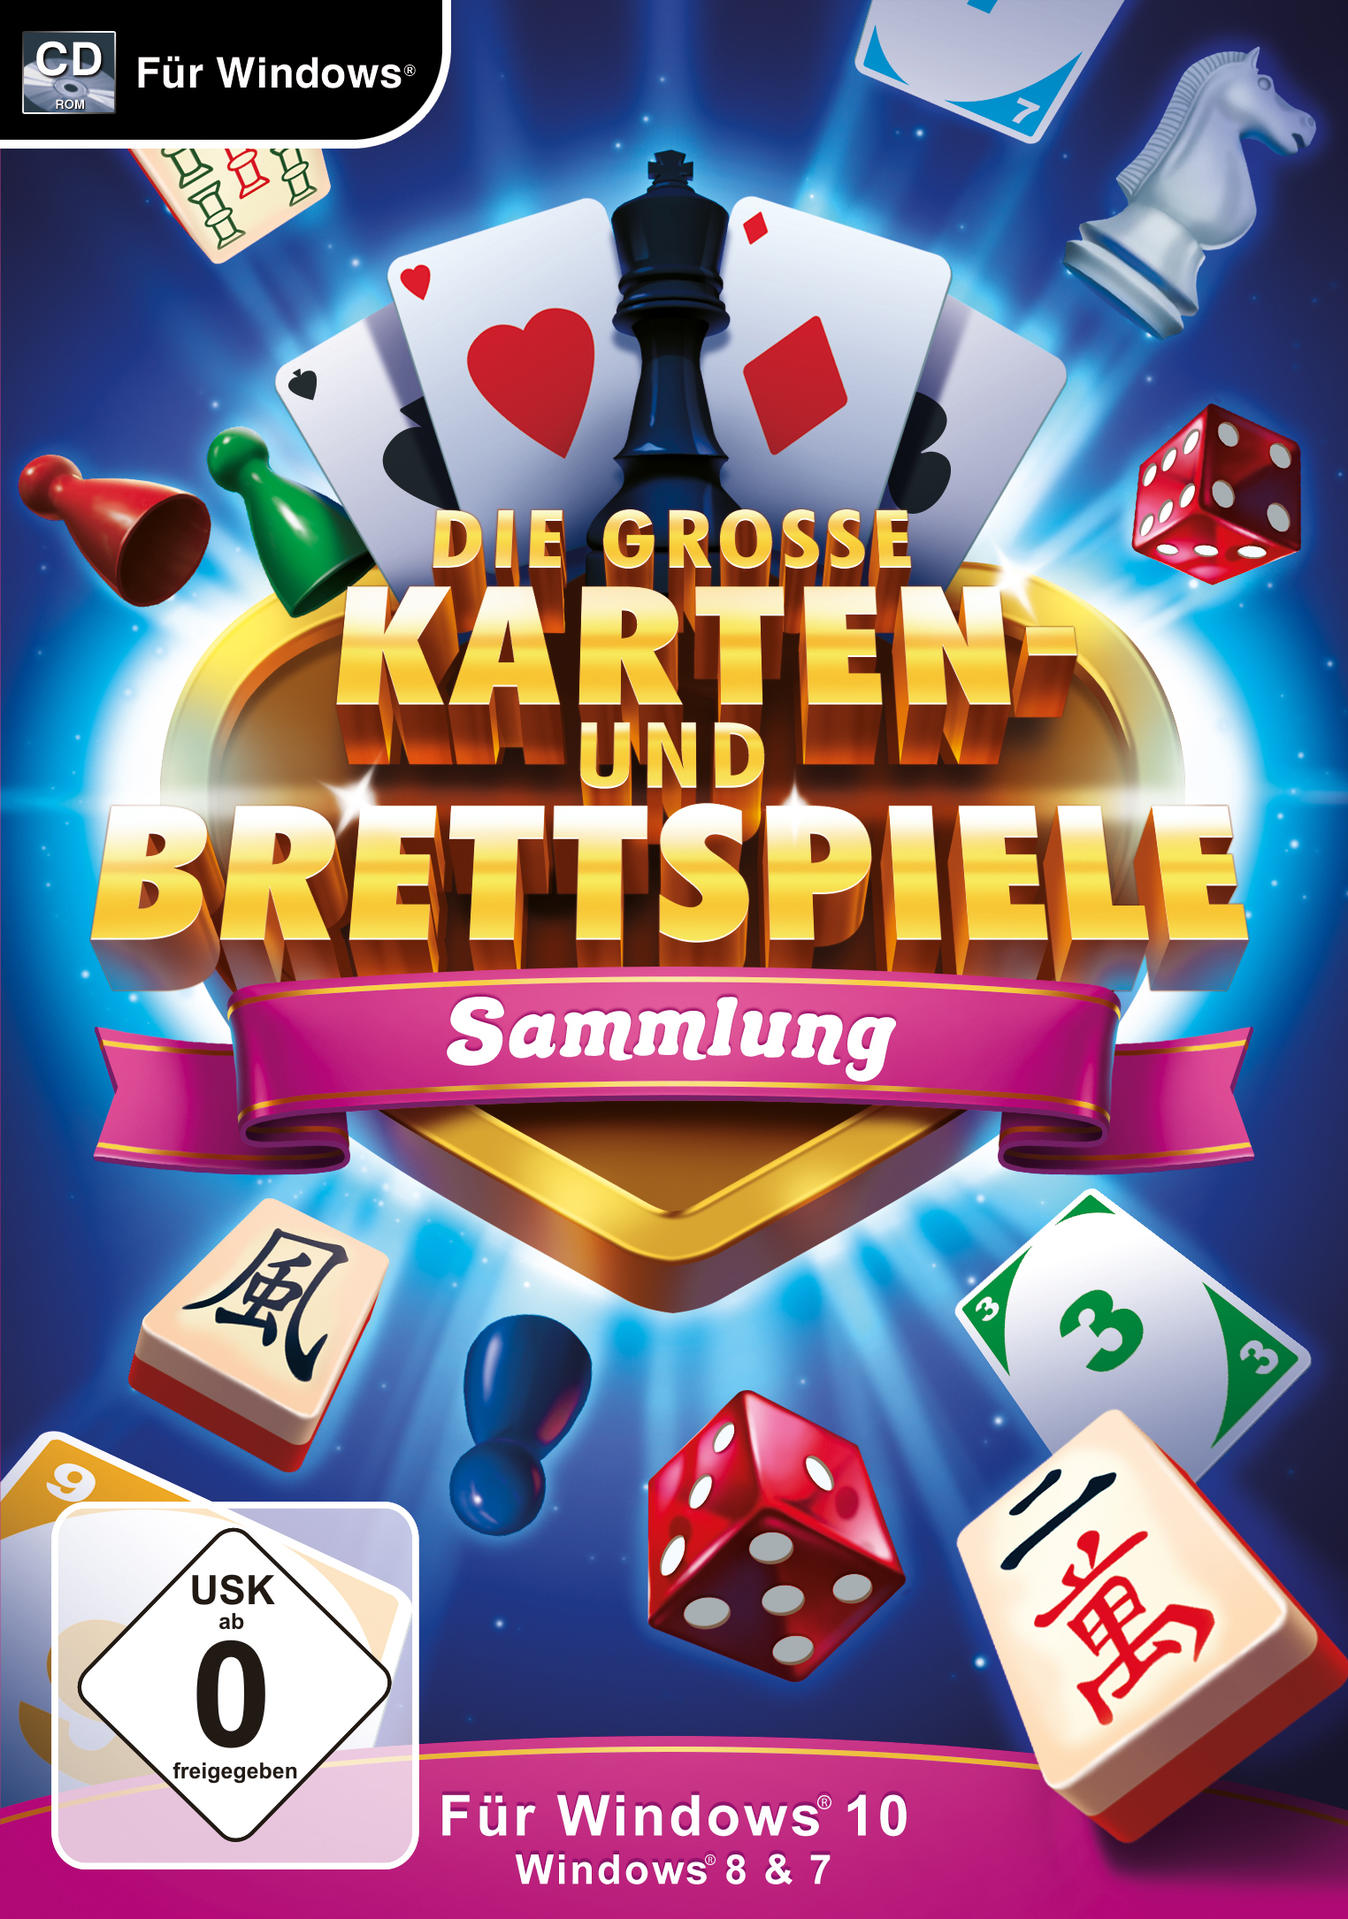 Karten Die Grosse [PC] Brettspielesammlung Und F. - Win.1